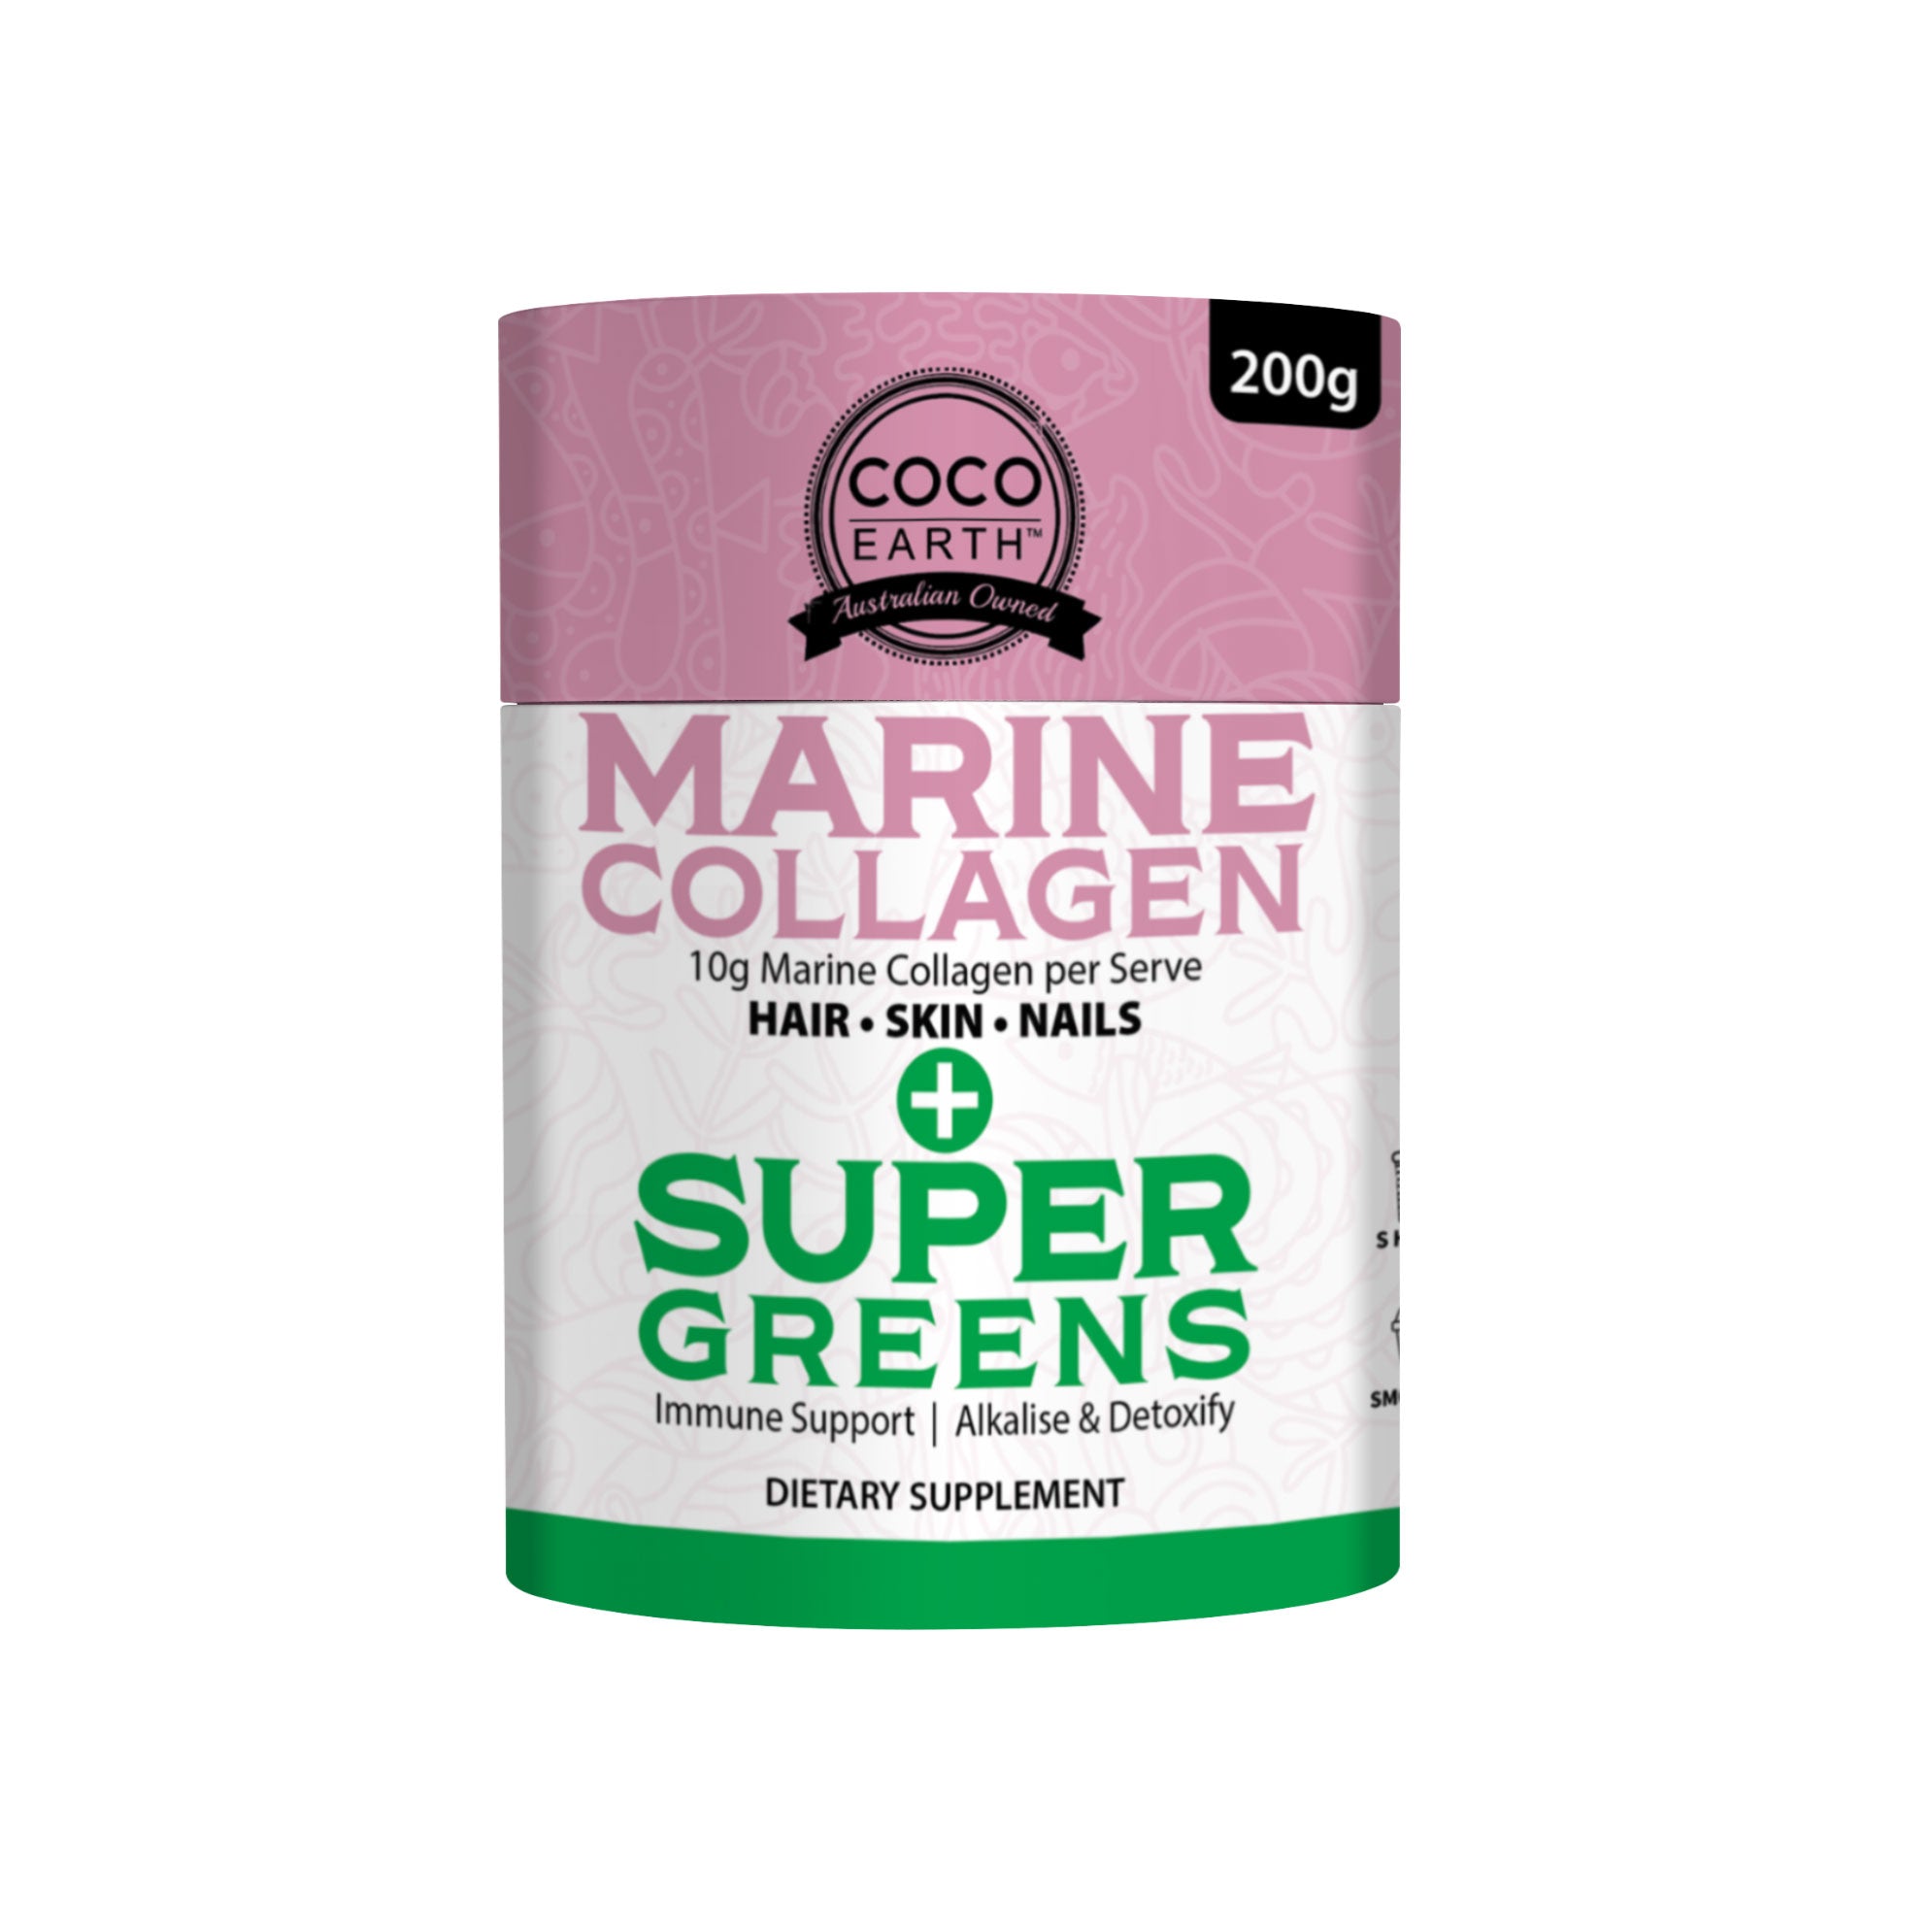 Marine Collagen + Super Greens 200g